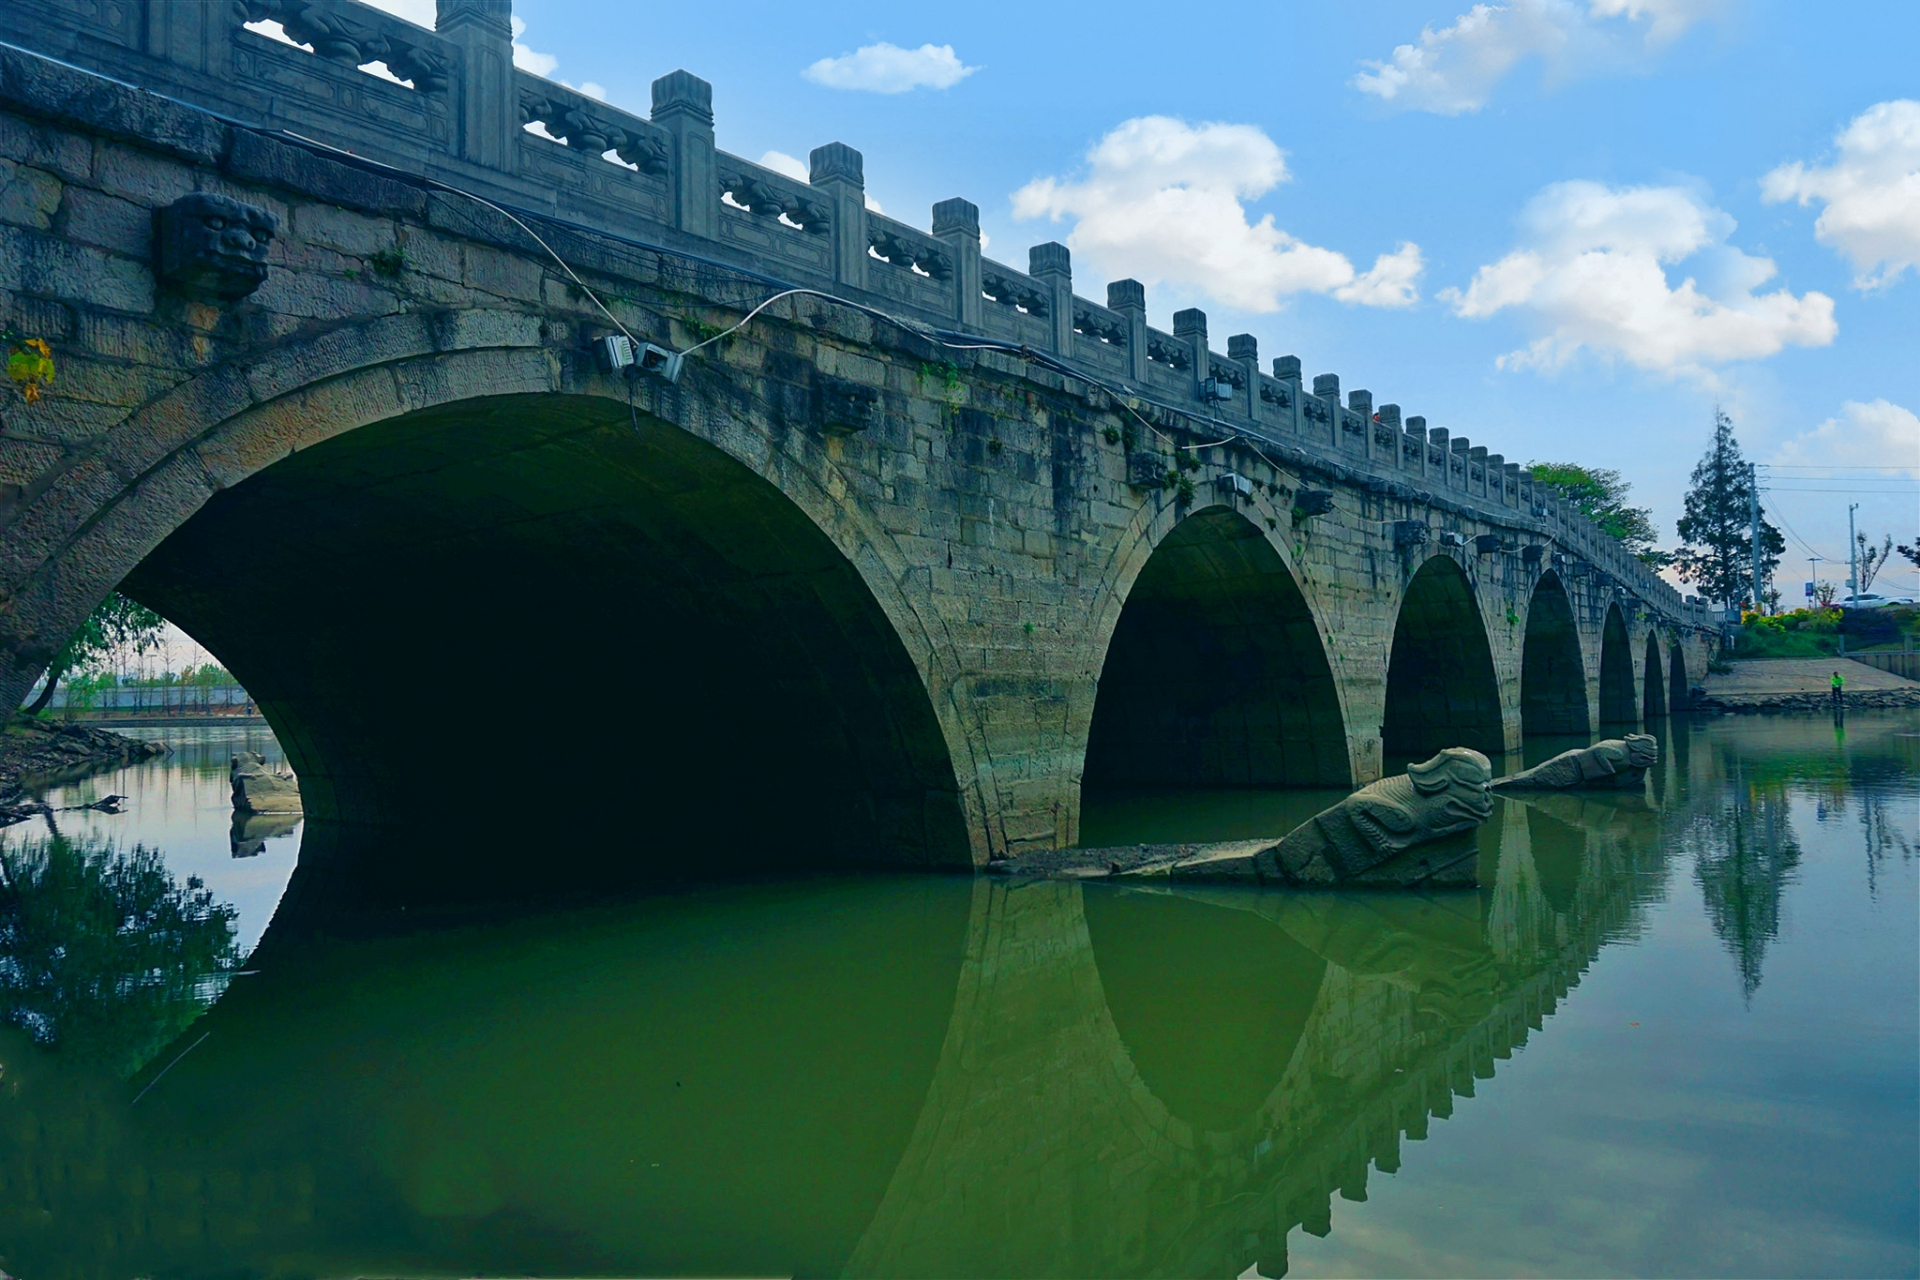 永安桥,又被称为大石桥,是沈阳市一座保存较为完整的清代石拱桥,建于